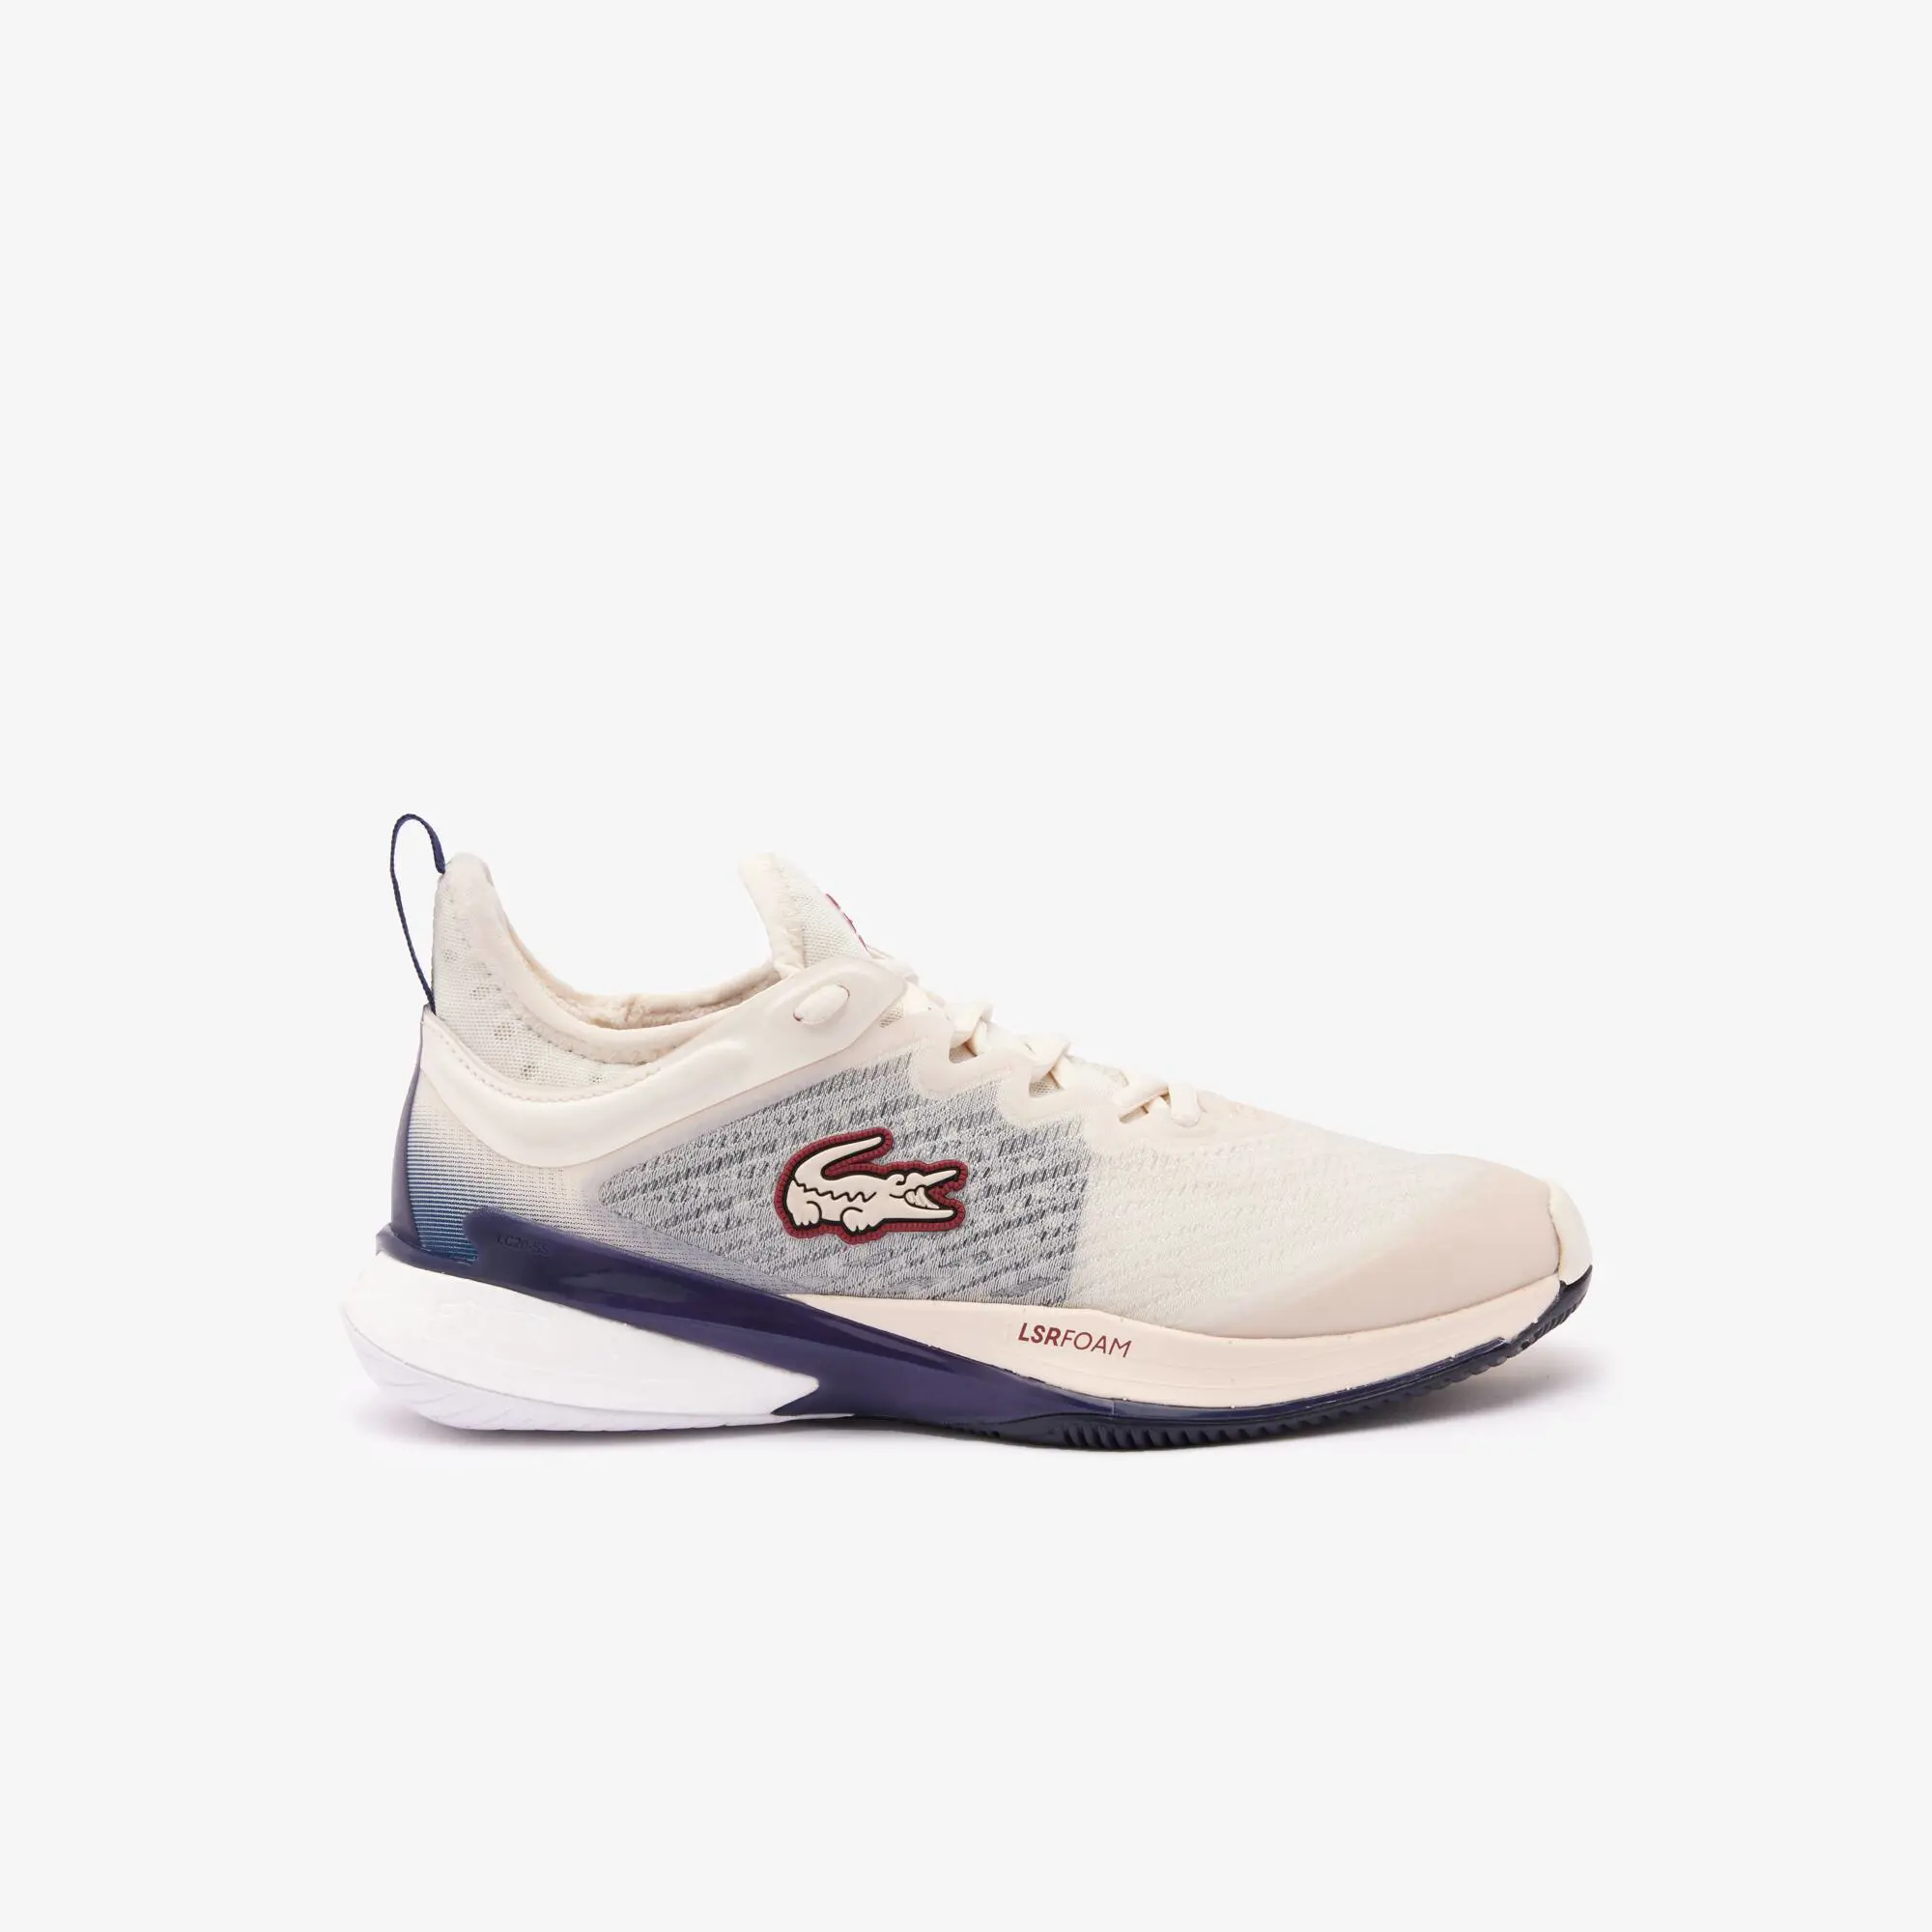 Lacoste Women's AG-LT23 Lite textile tennis shoes. 1